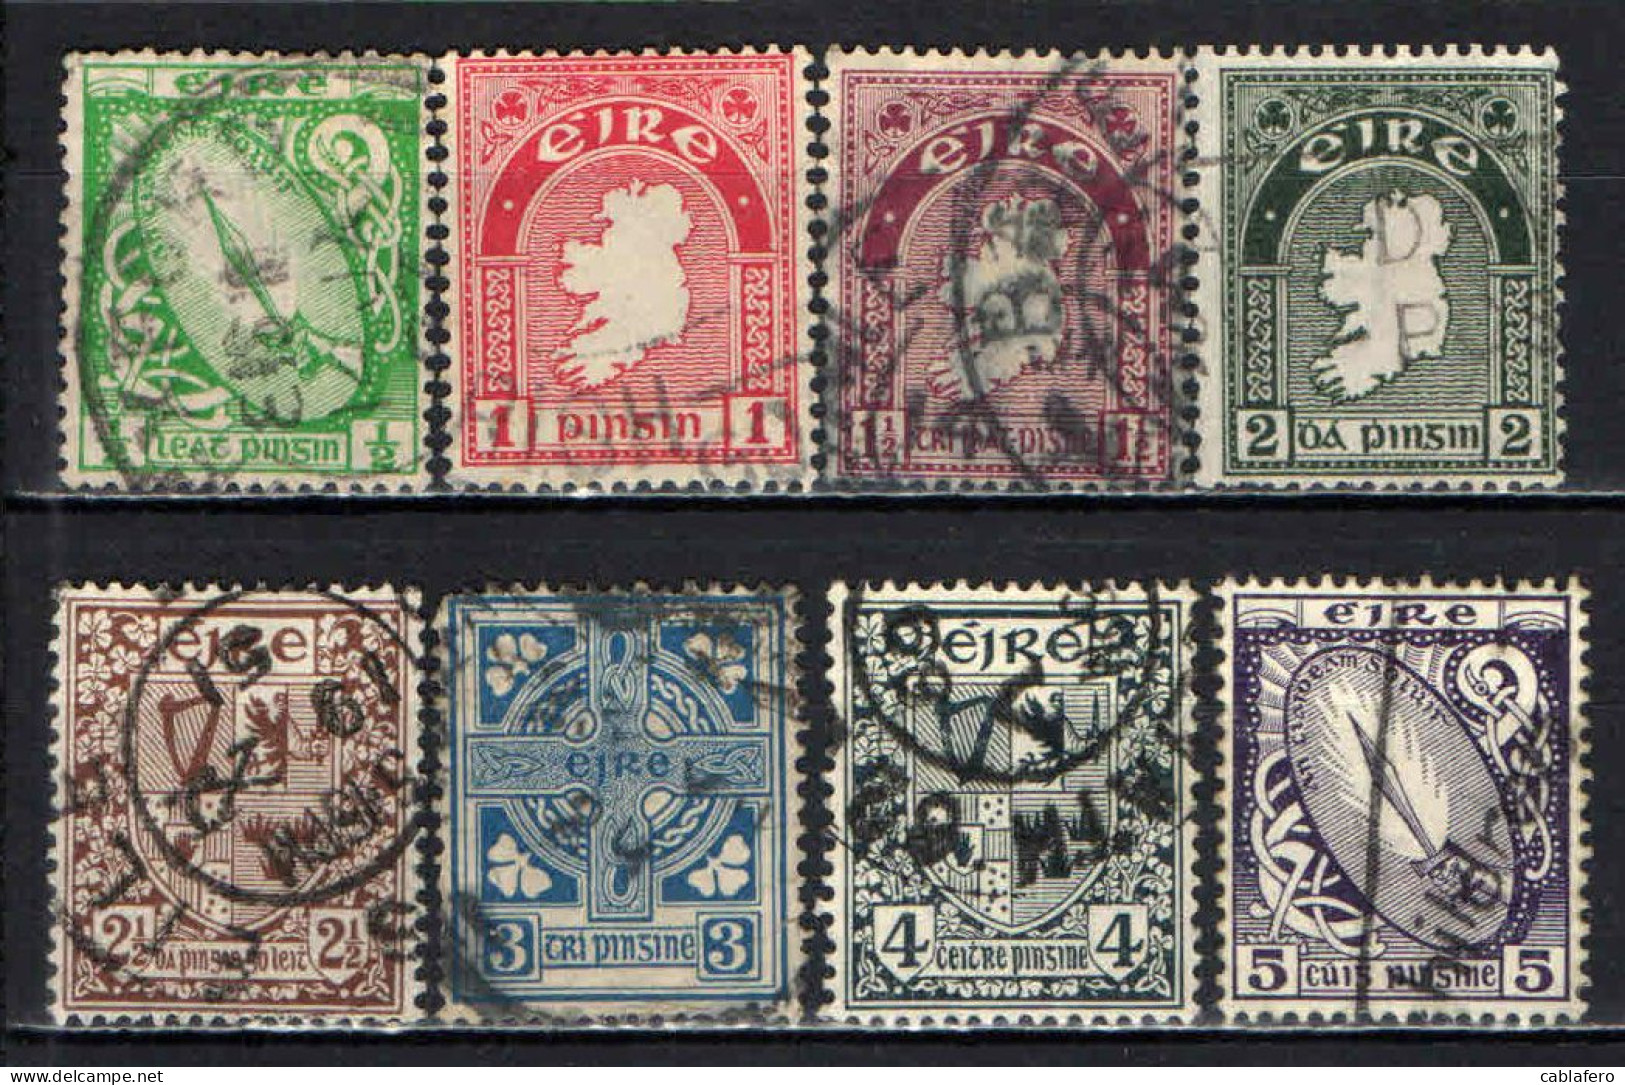 IRLANDA - 1922 - SPADA DI LUCE - MAPPA DELL'IRLANDA - CROCE CELTICA - FILIGRANA "SE" IN MONOGRAMMA - USATI - Used Stamps